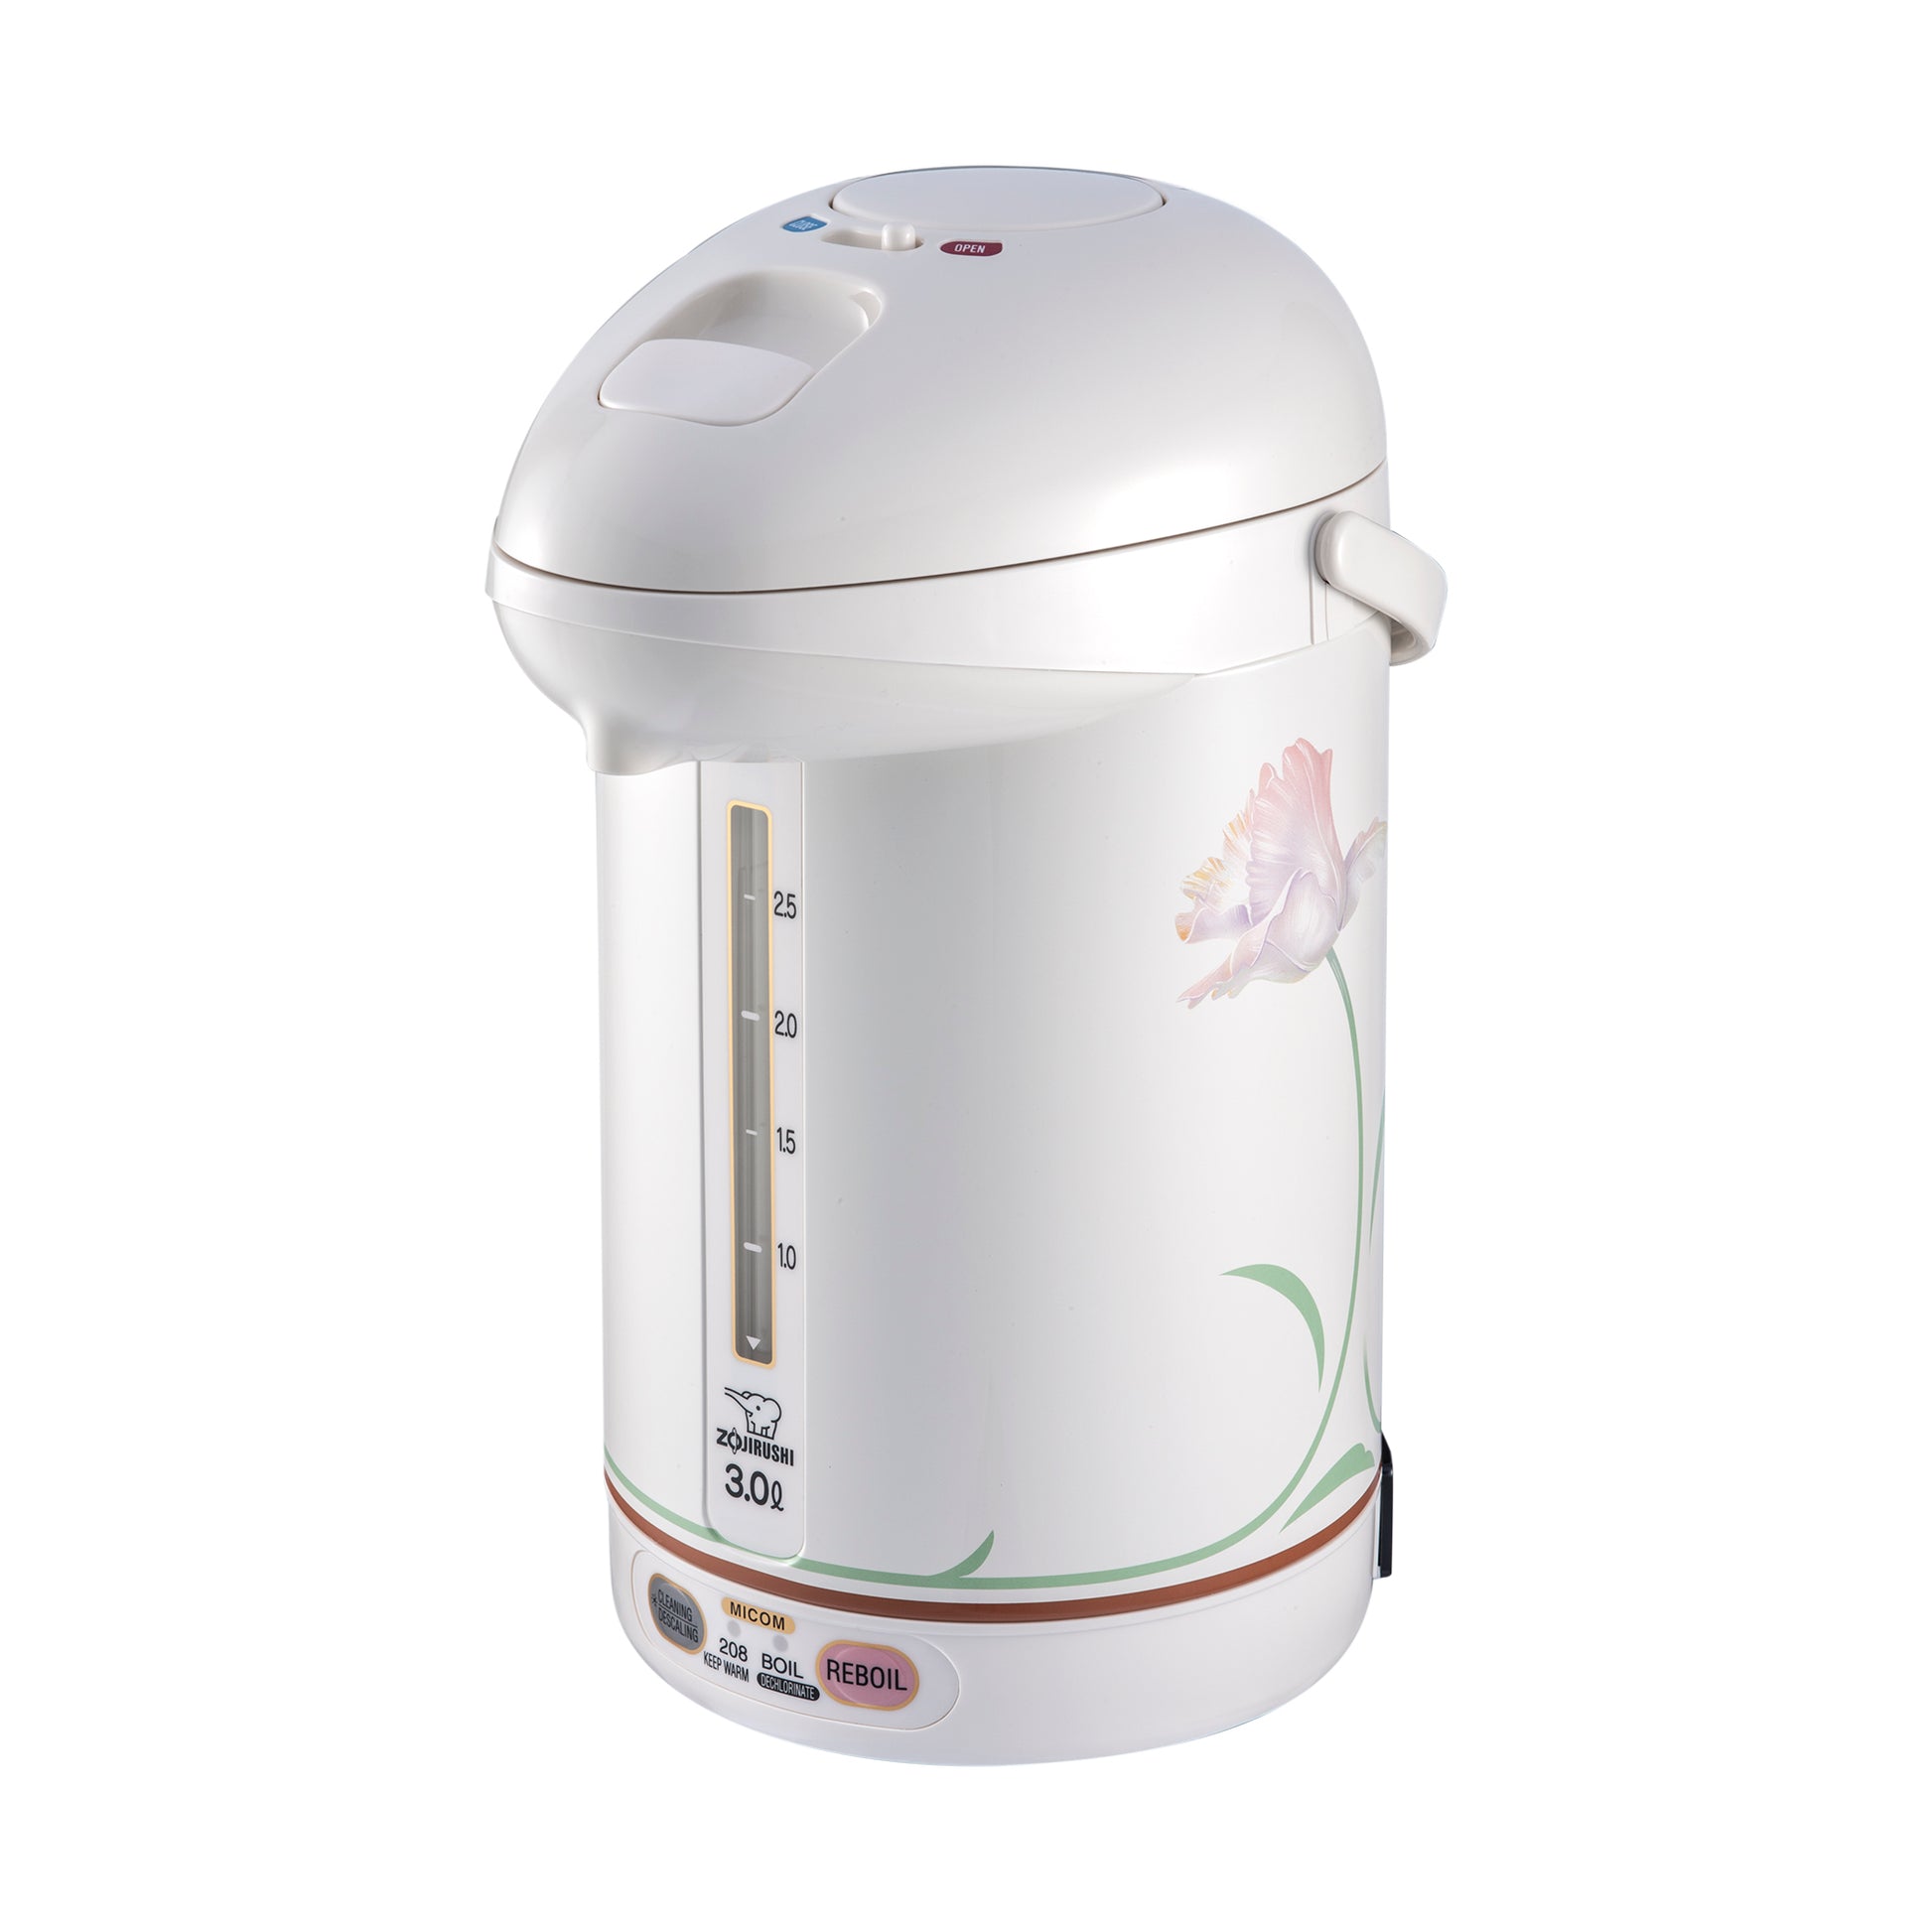 Zojirushi Hello Kitty Micom Water Boiler & Warmer - 3 L